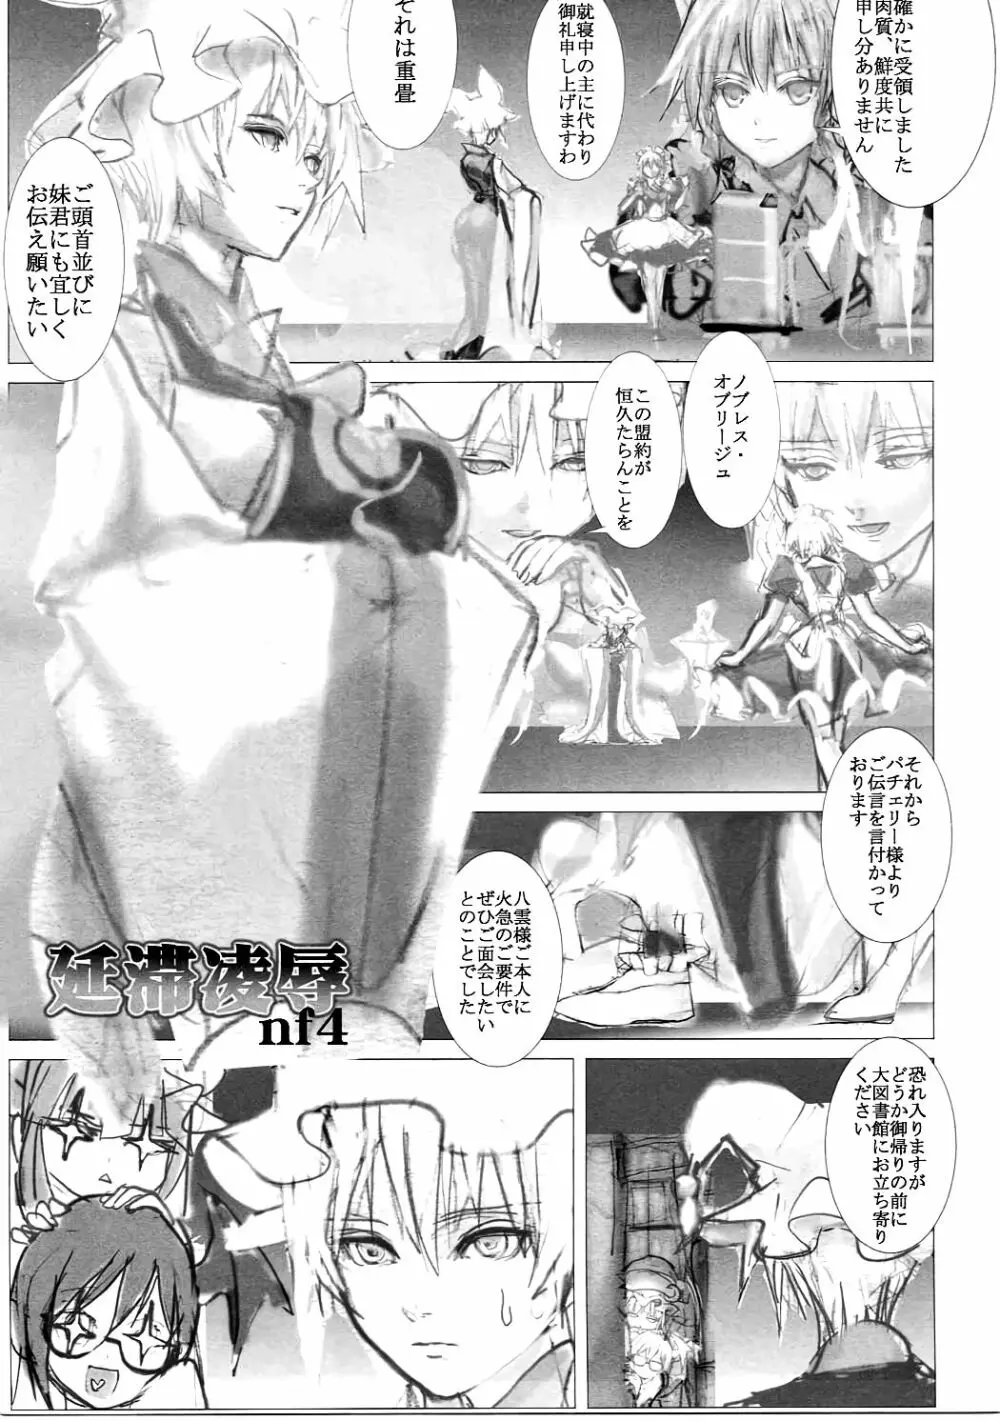 まるしき紅魔郷 パチュリー&小悪魔 Vol.2 16ページ